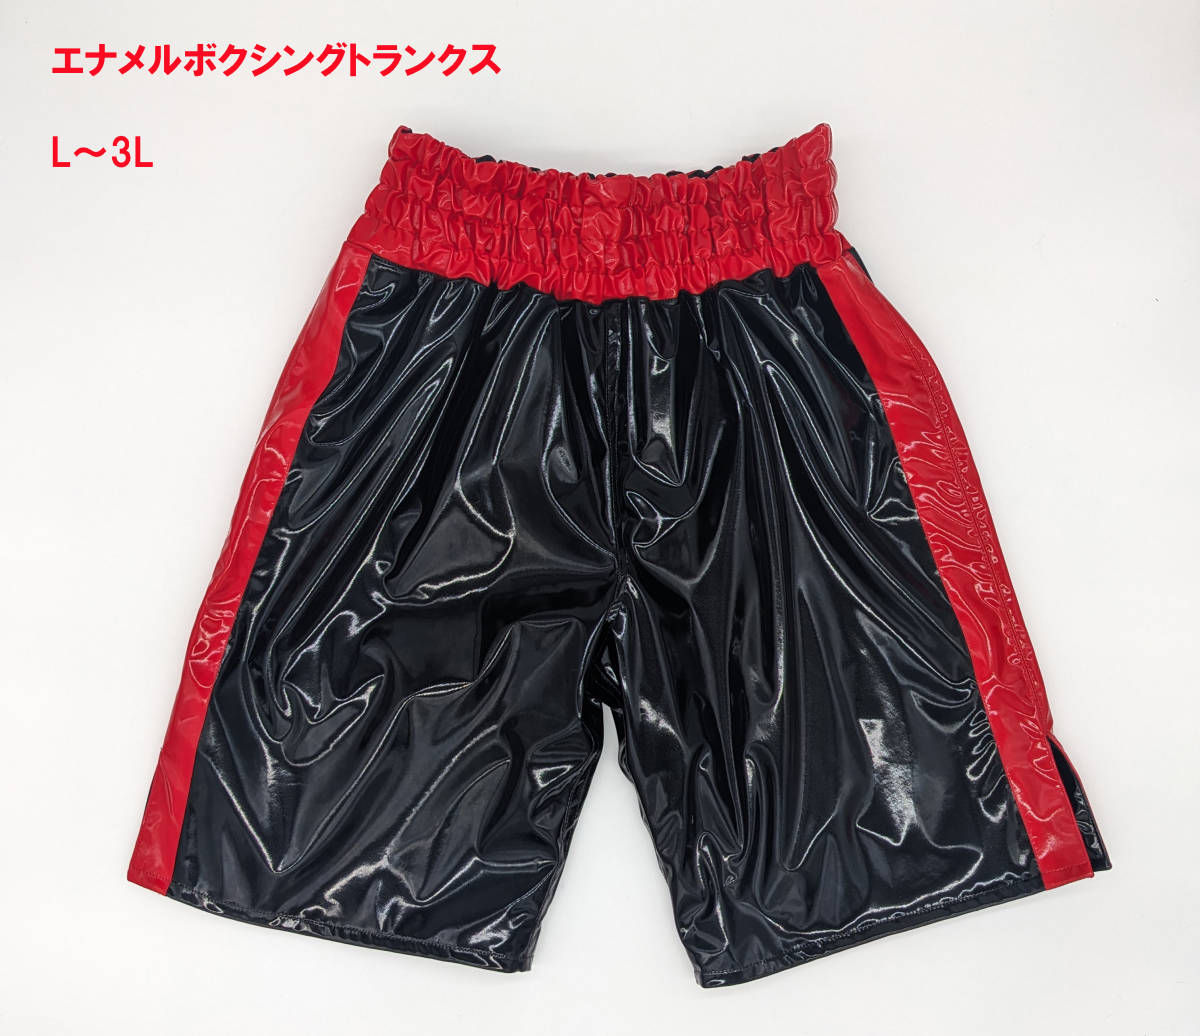 【エナメル生地のボクシングトランクス(エナメル裏地付き)】 黒/赤 (メンズLサイズ) 格闘技衣装 新品